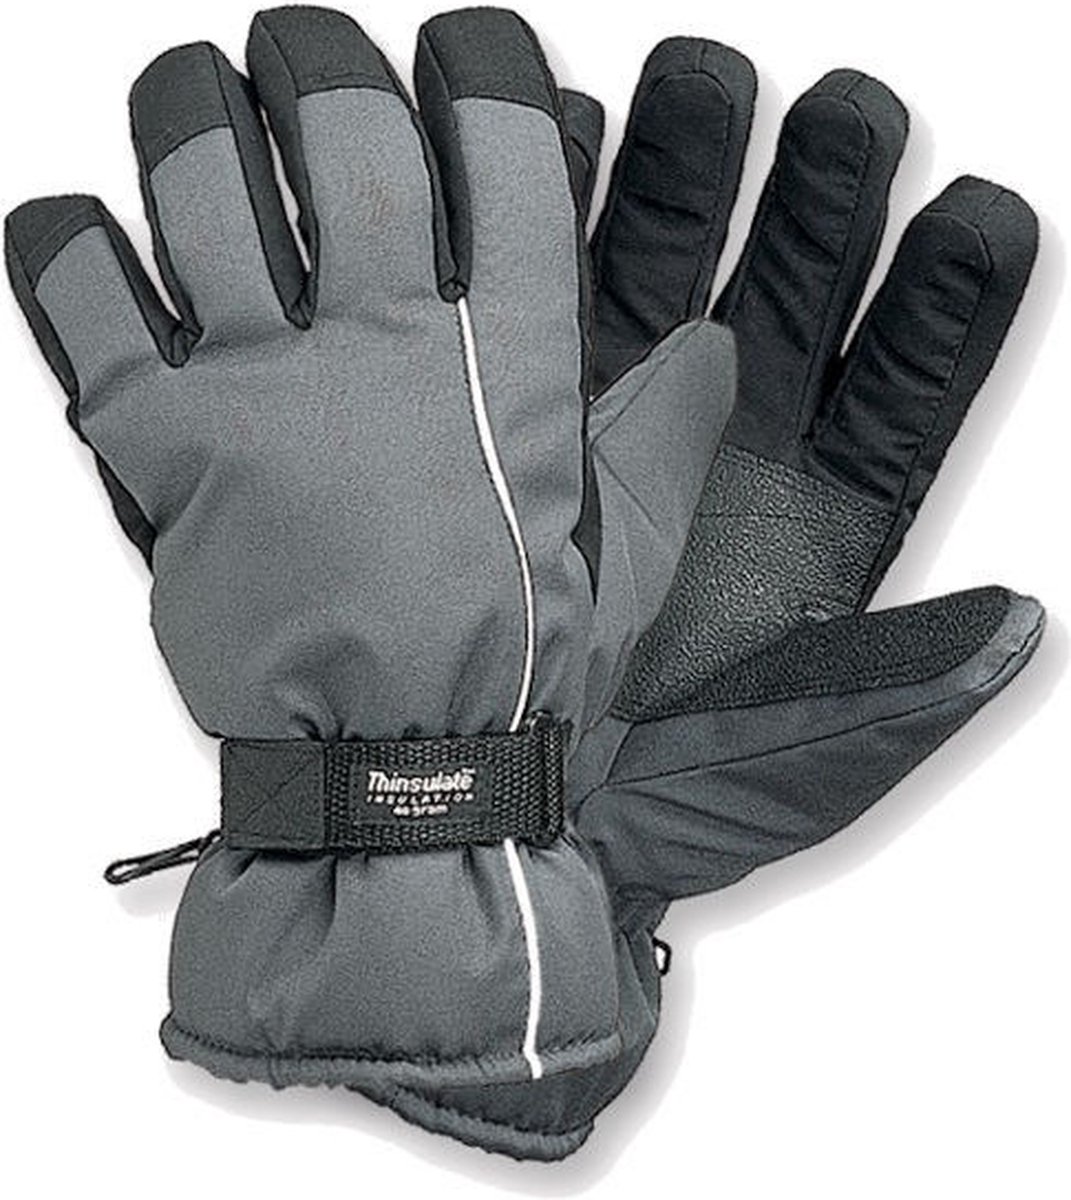 Thinsulate Skihandschoen grijs/zwart XL